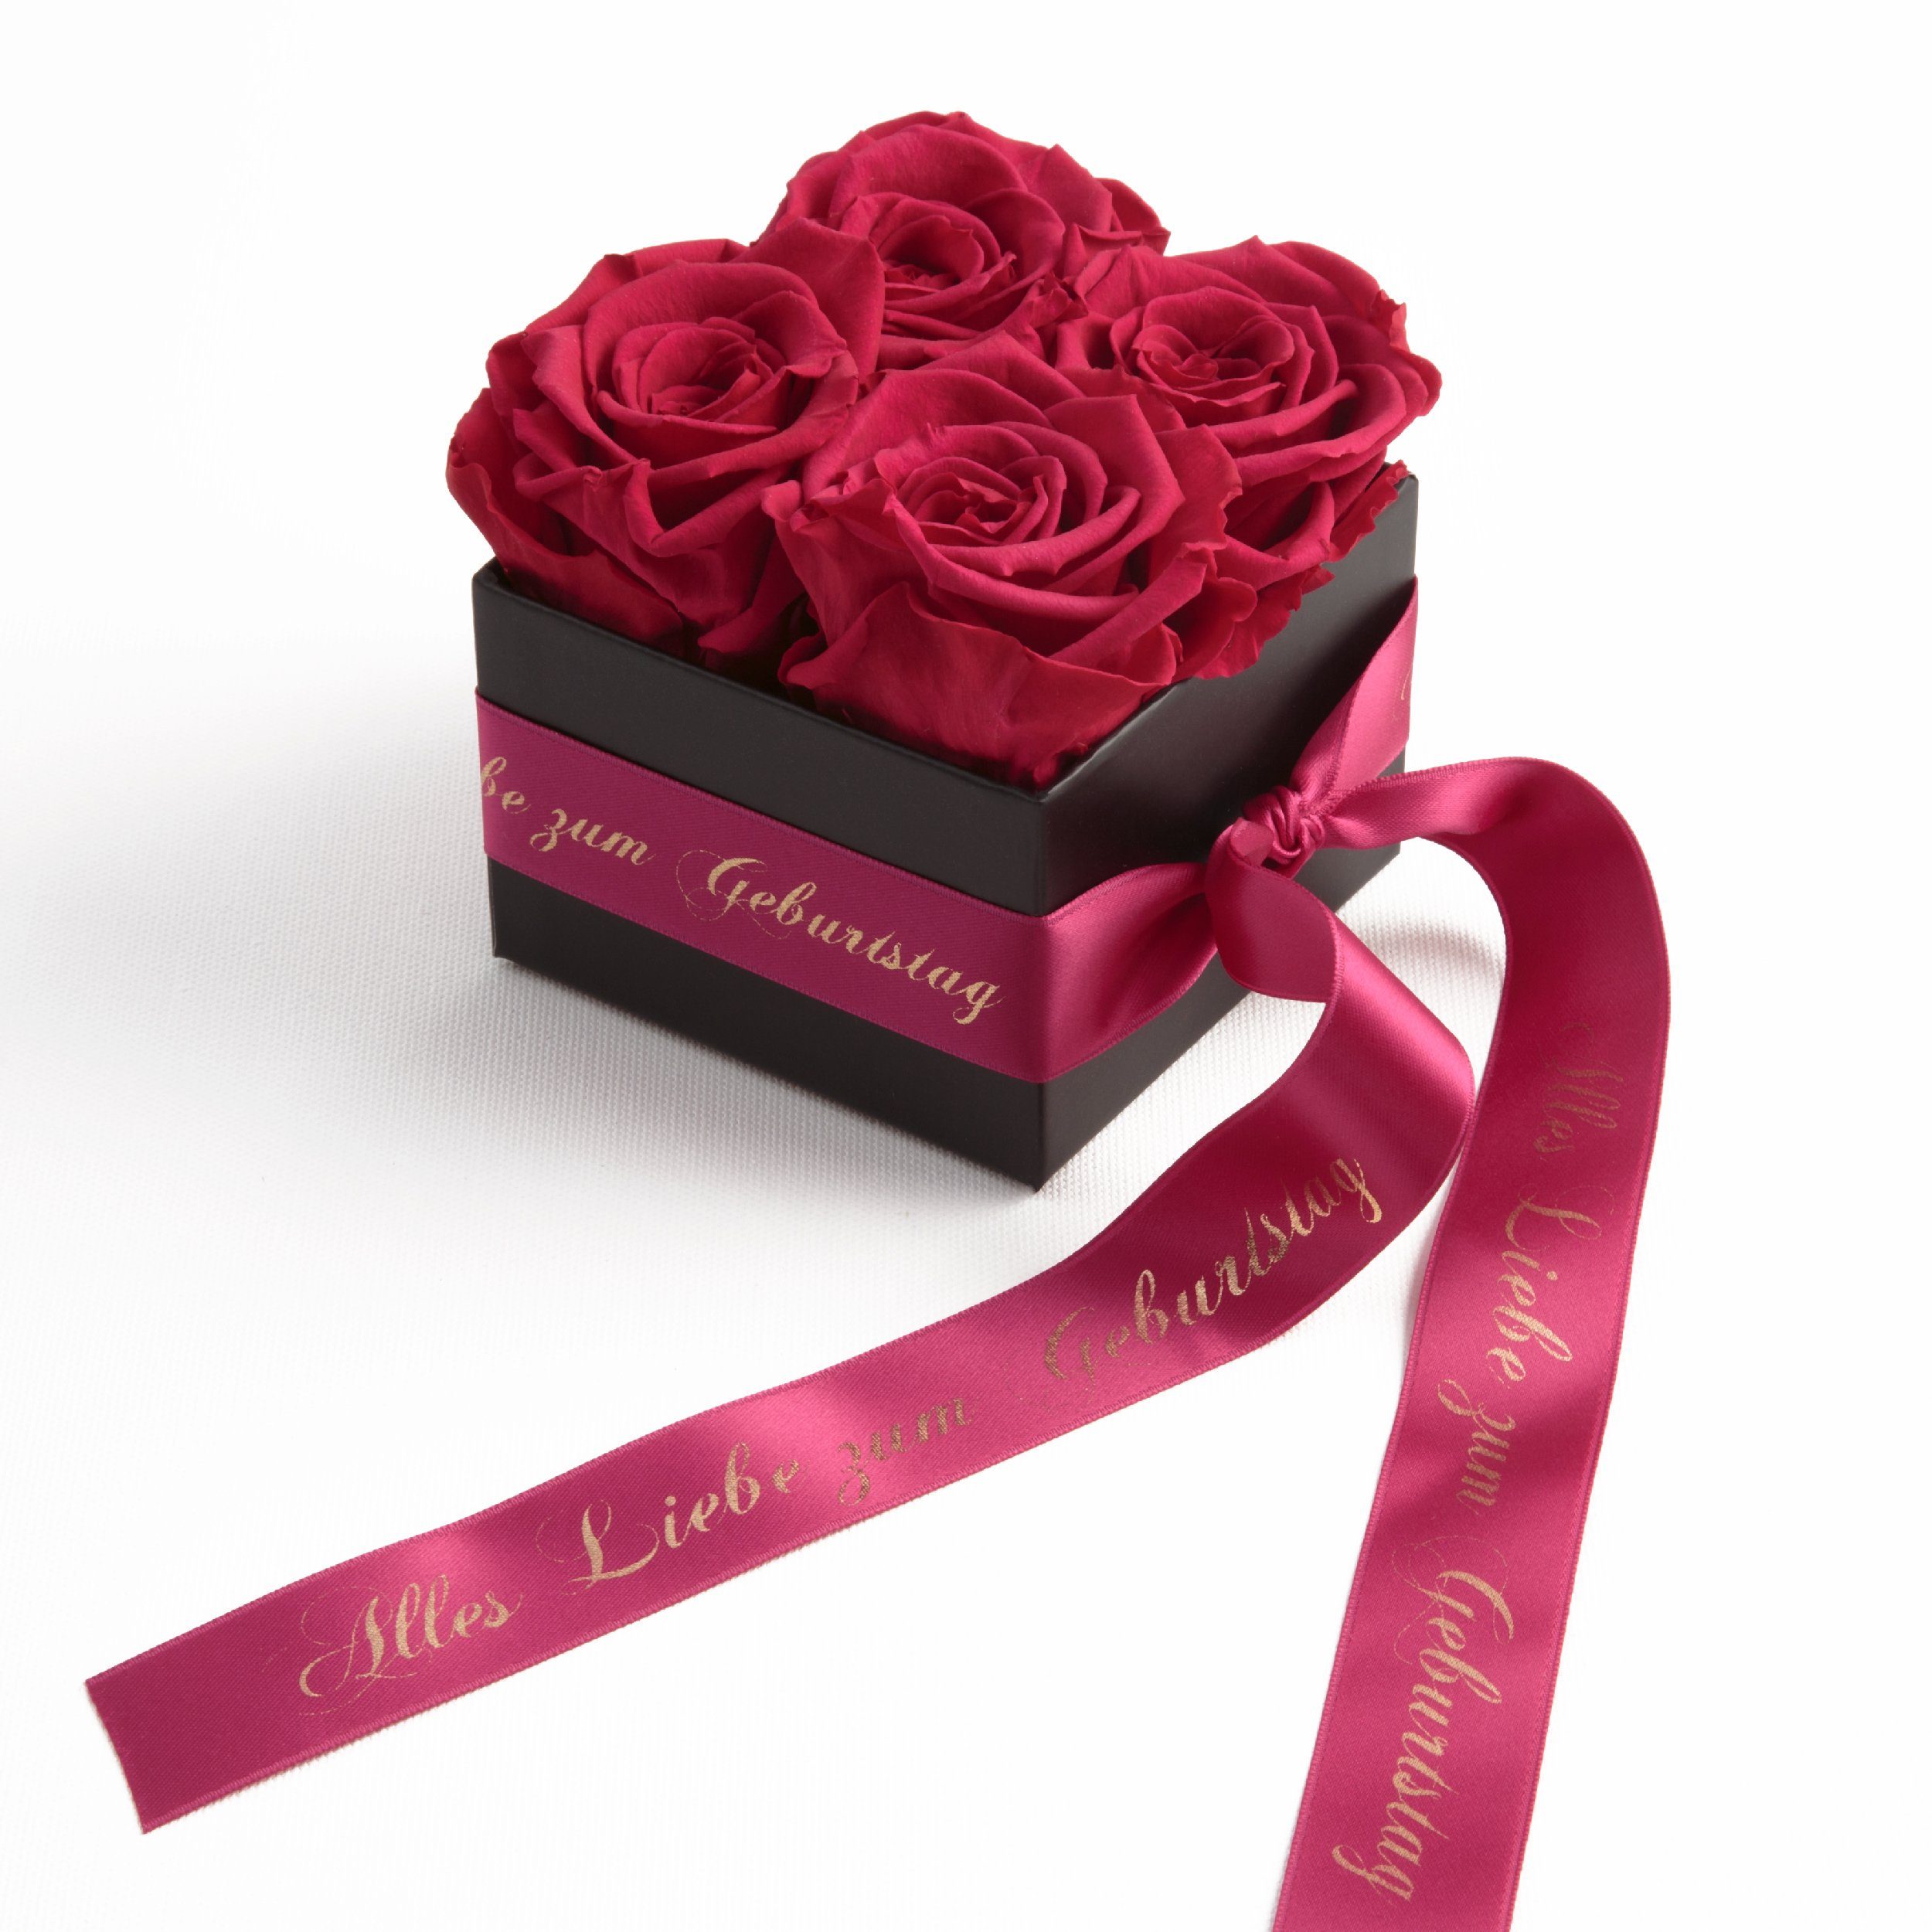 ROSEMARIE SCHULZ Heidelberg Dekoobjekt Rosenbox echte Rosen Alles Liebe zum Geburtstag Geschenk für Frauen (1 St), Echte konservierte Rosen Pink | Deko-Objekte